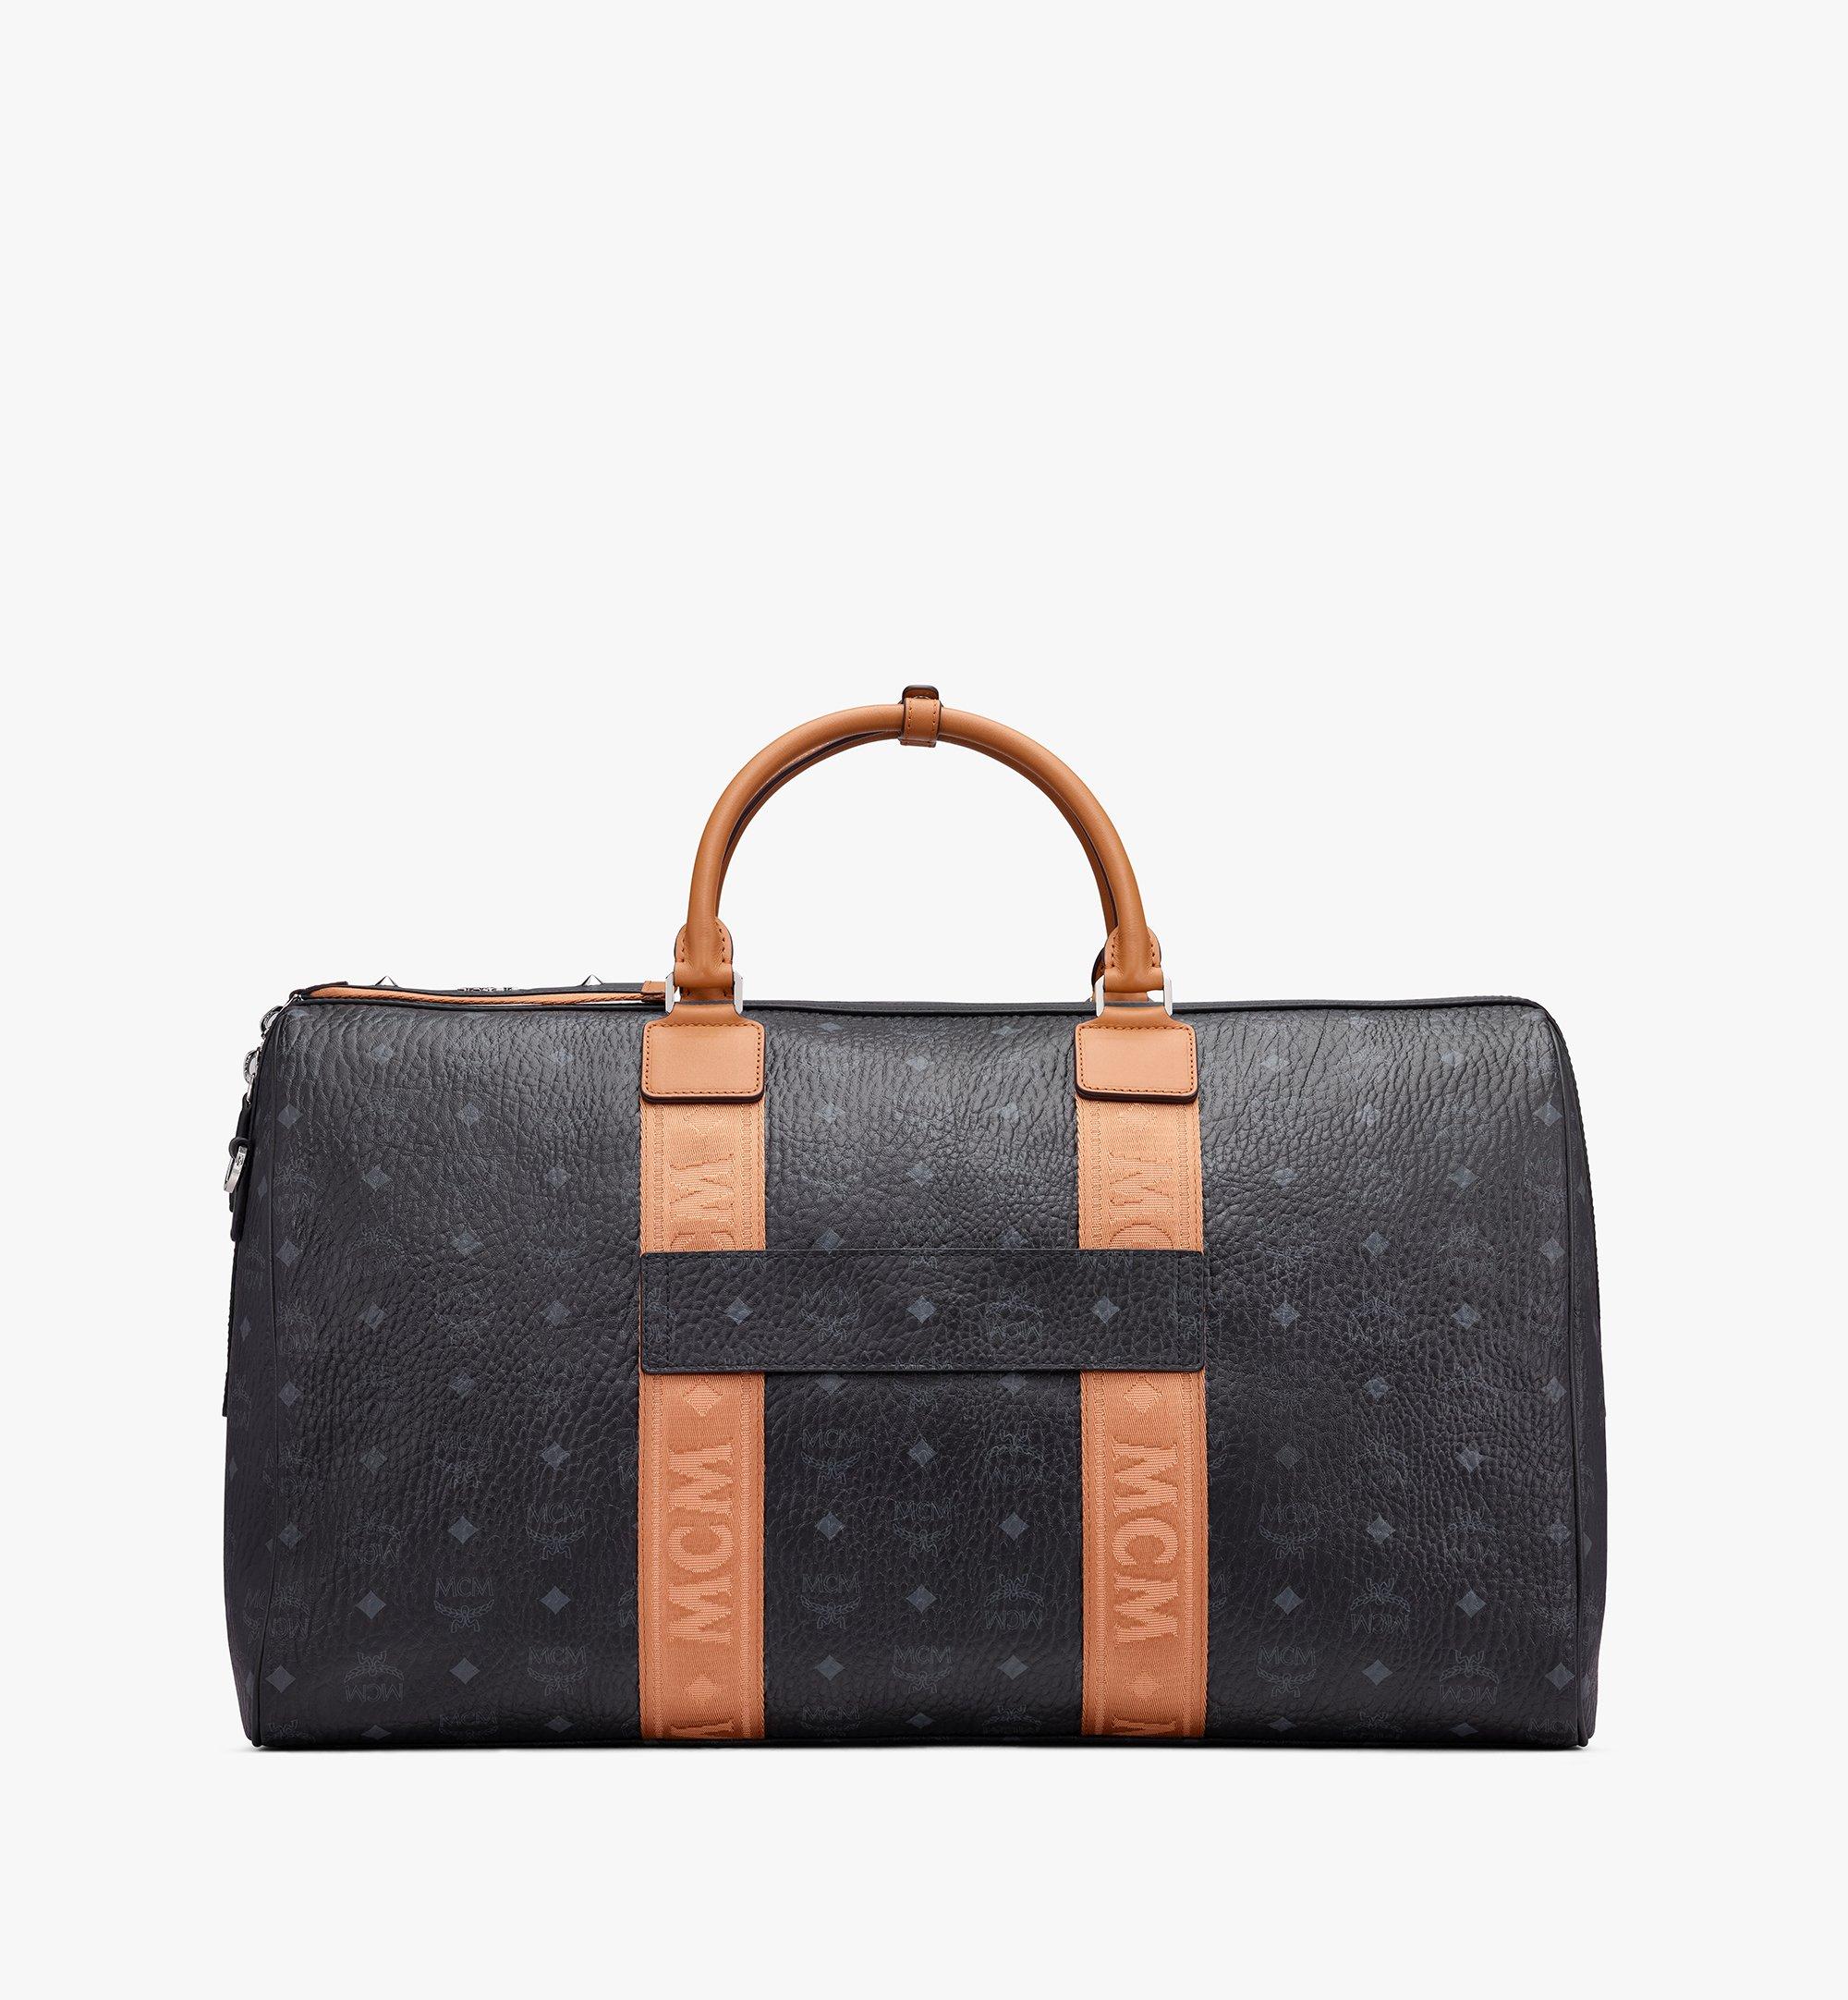 55 cm / 22 in Traveler Weekender Bag in Visetos Black | MCM® US